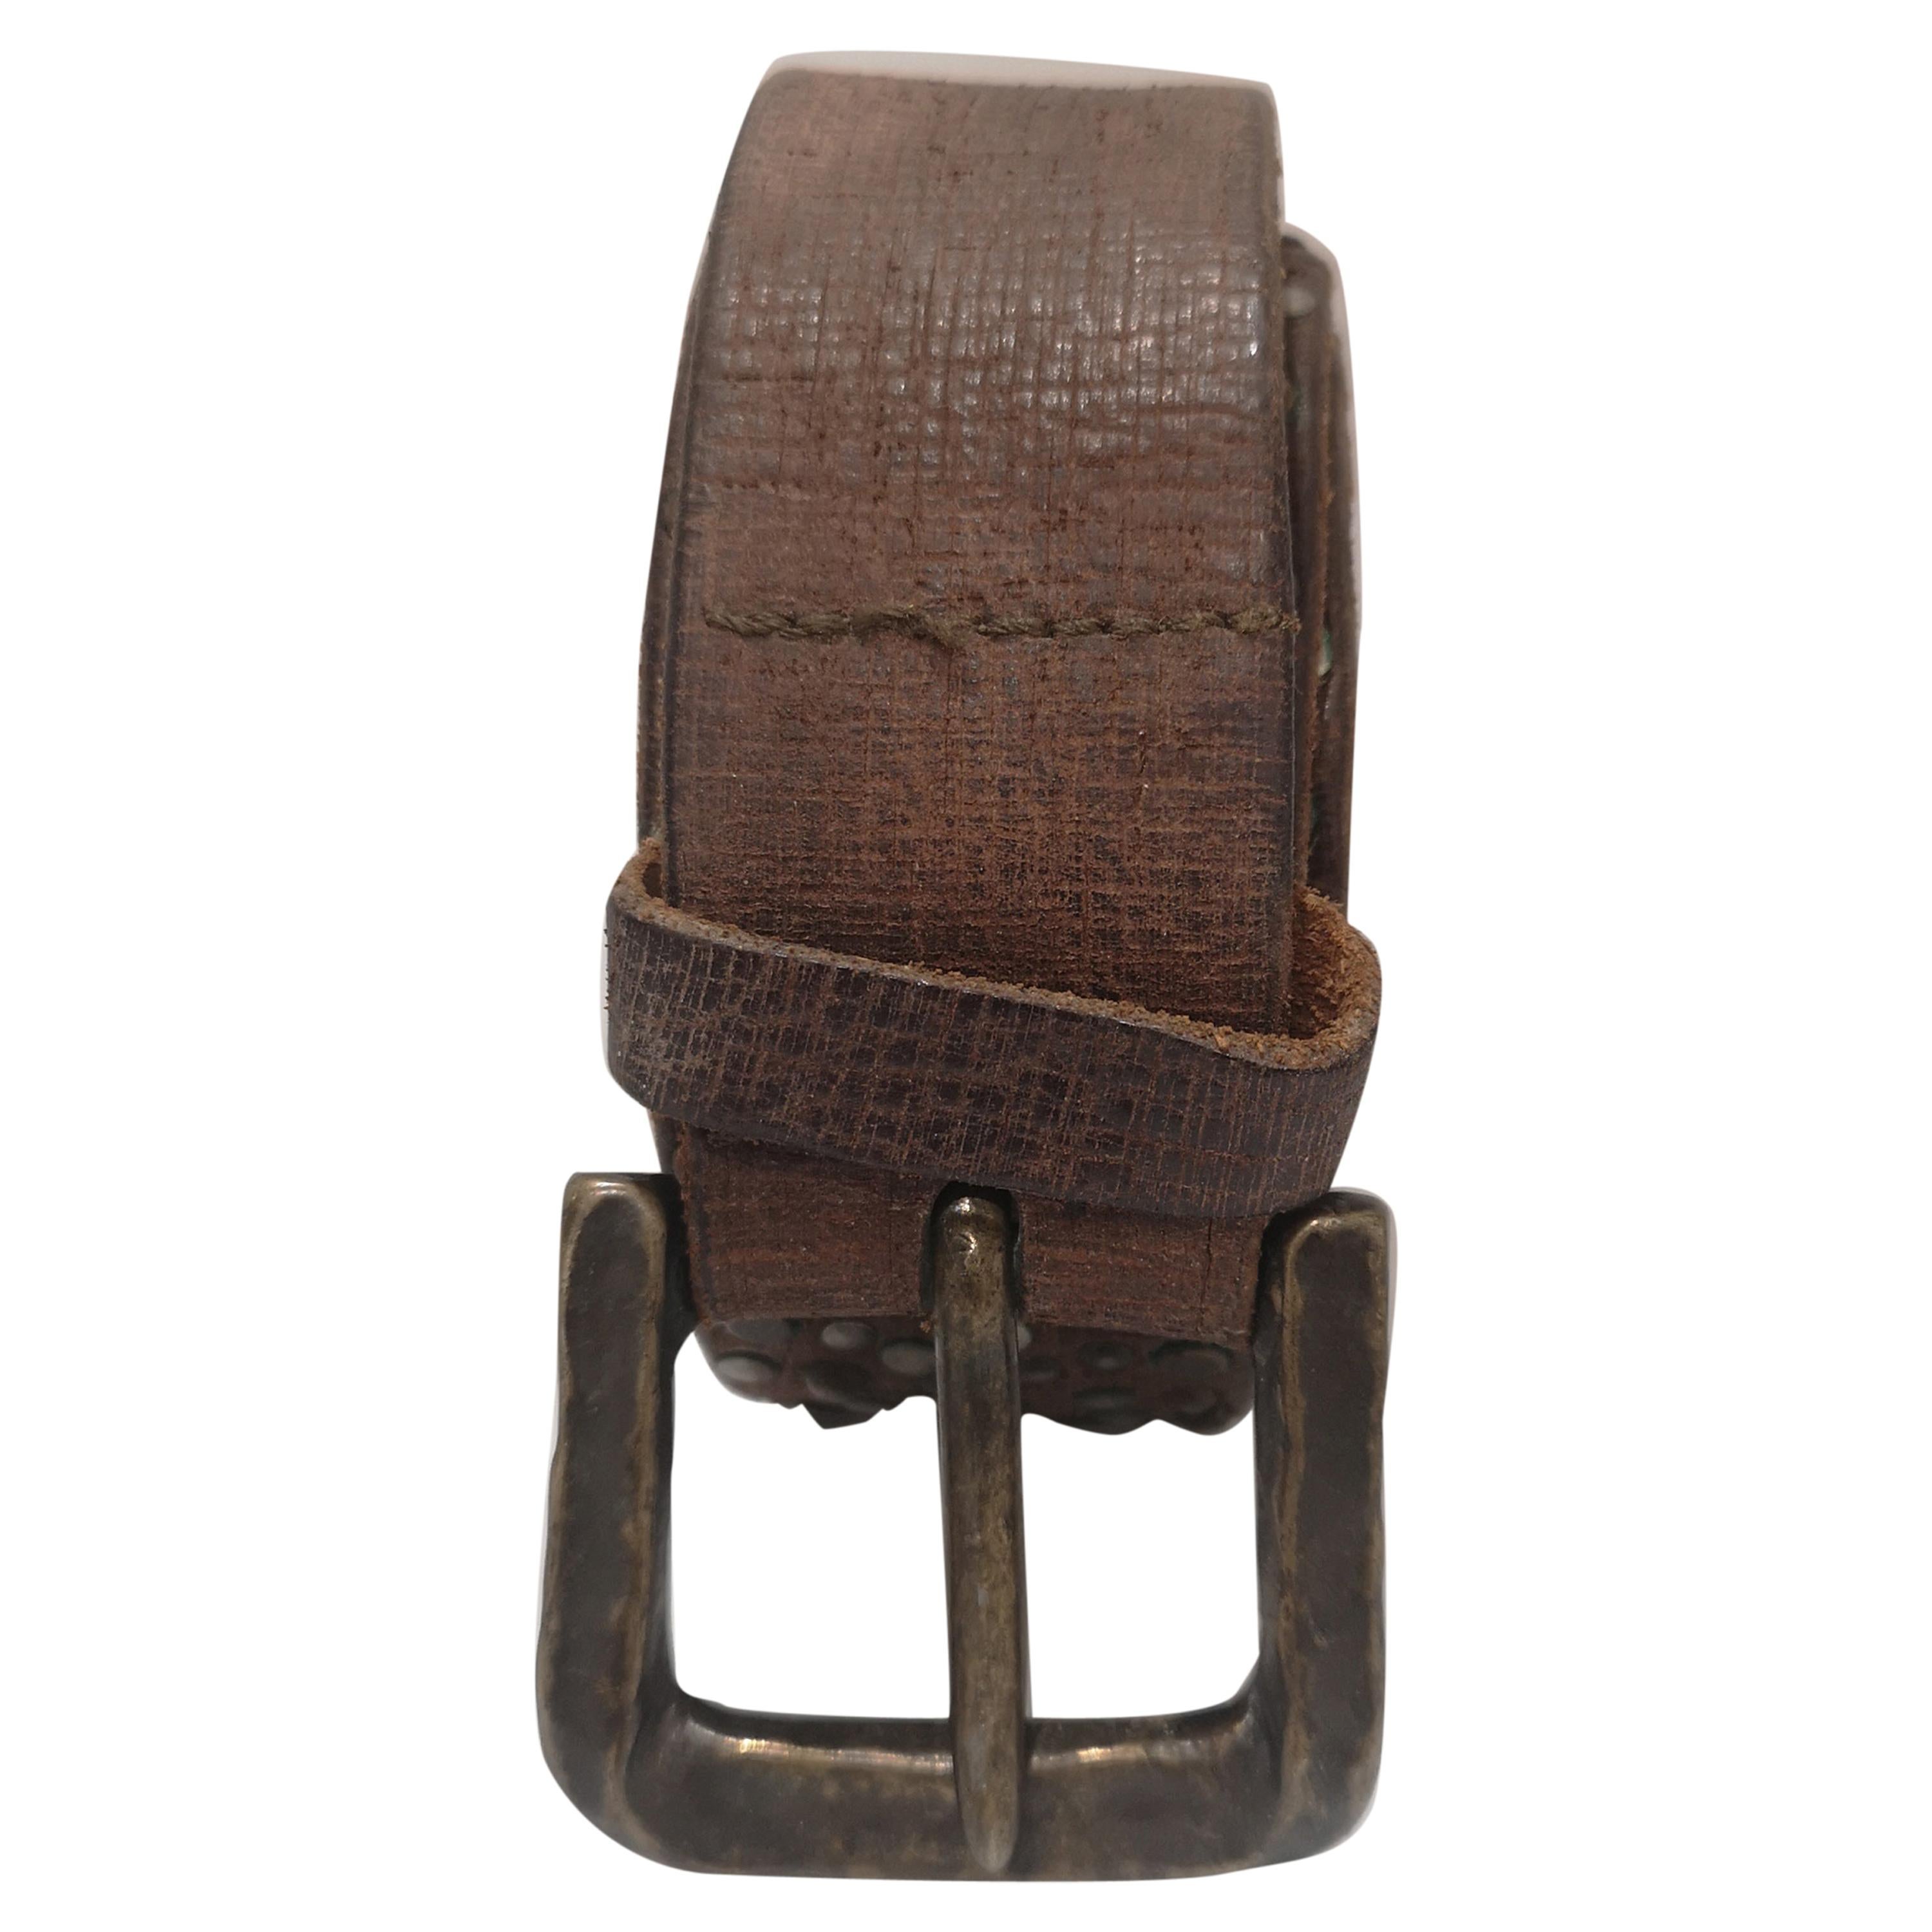 Vintage brown leather belt